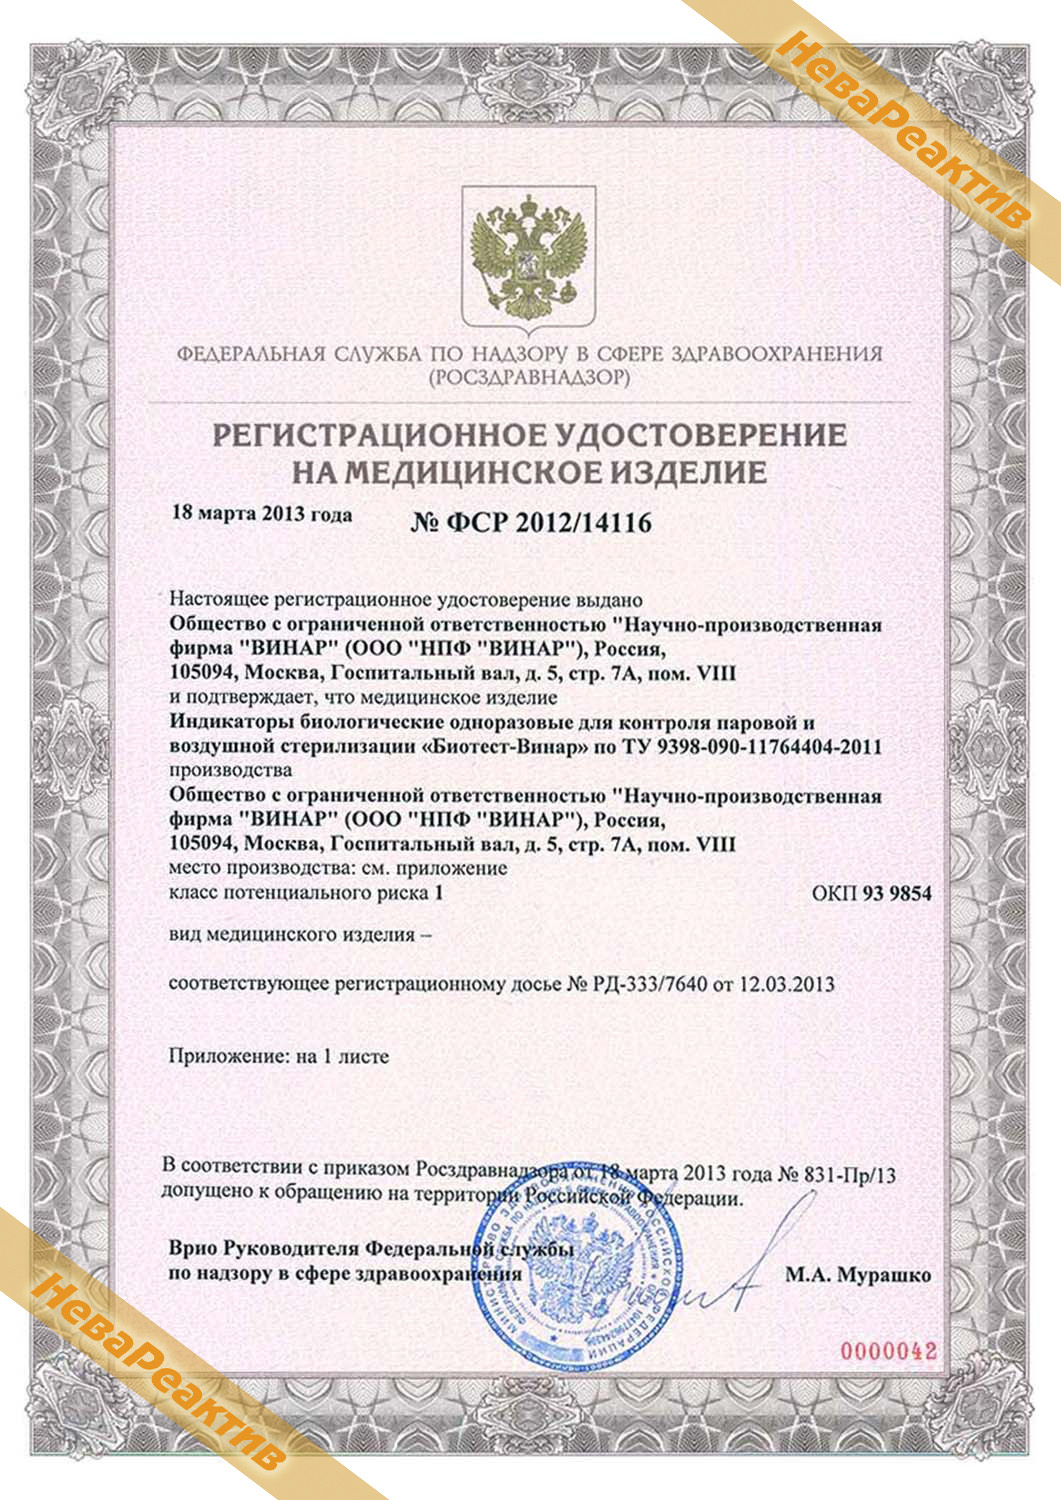 ИВЛ регистрационное удостоверение